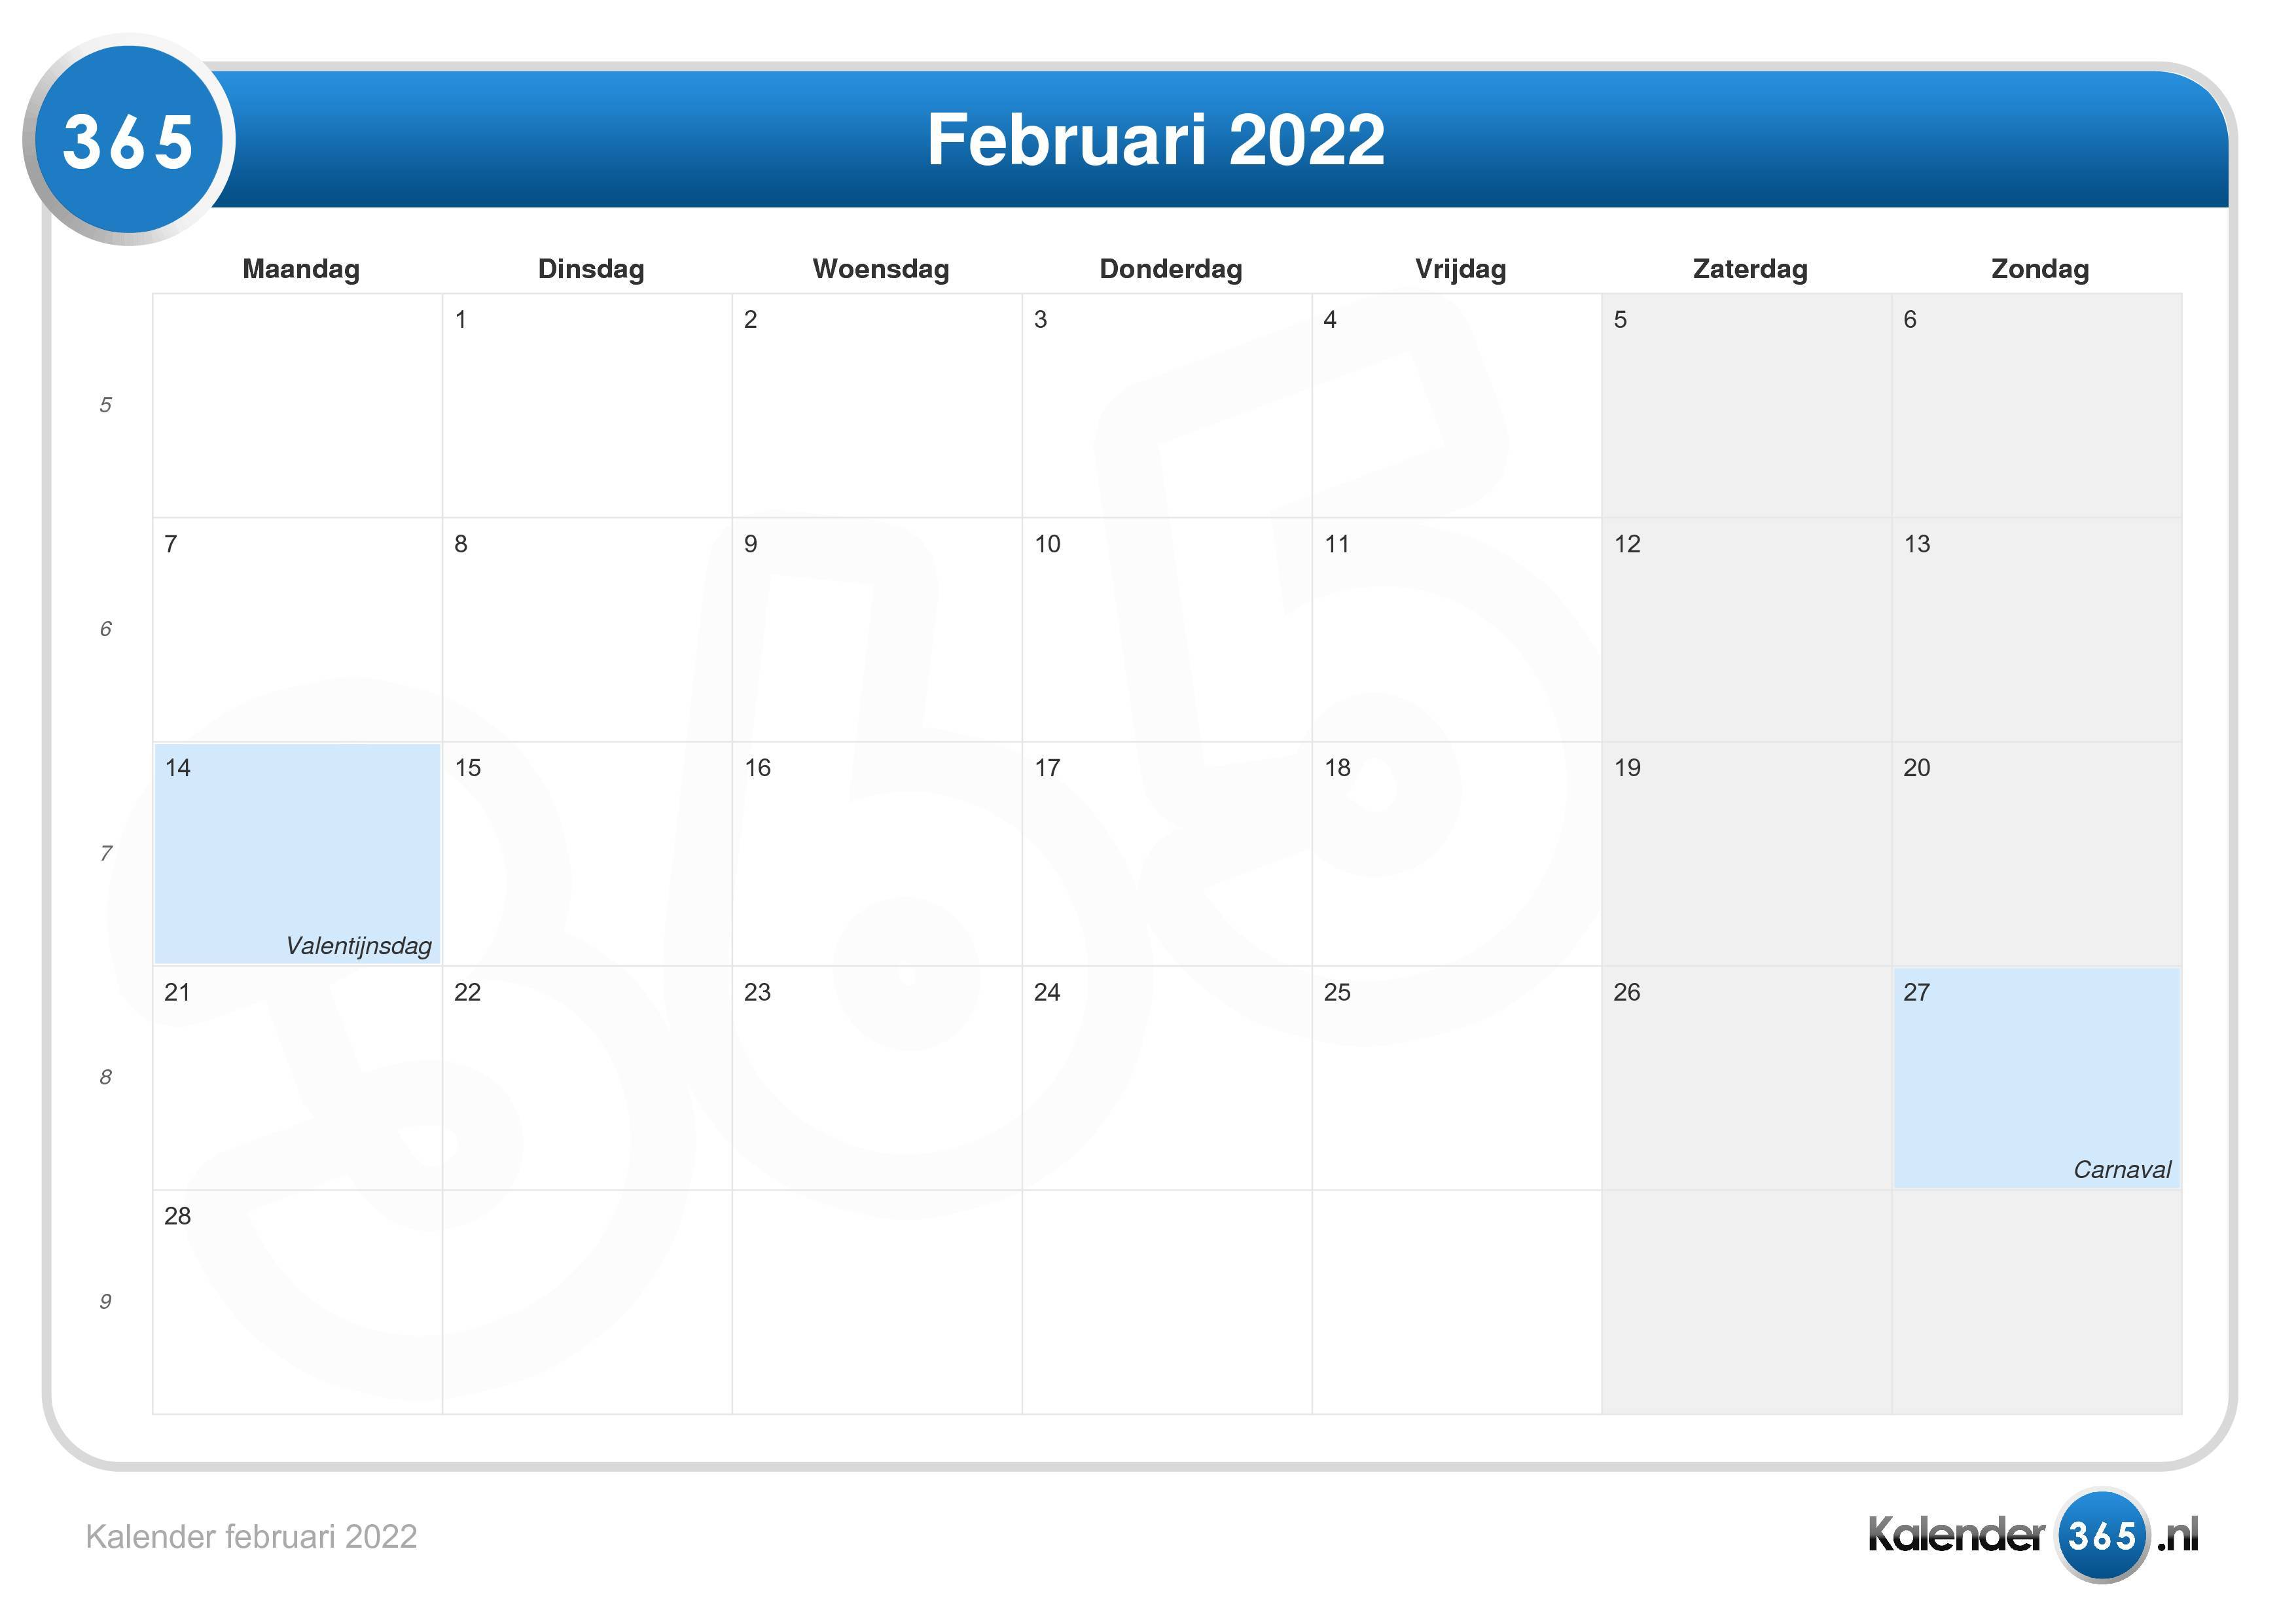 Februari 2022 kalender jawa